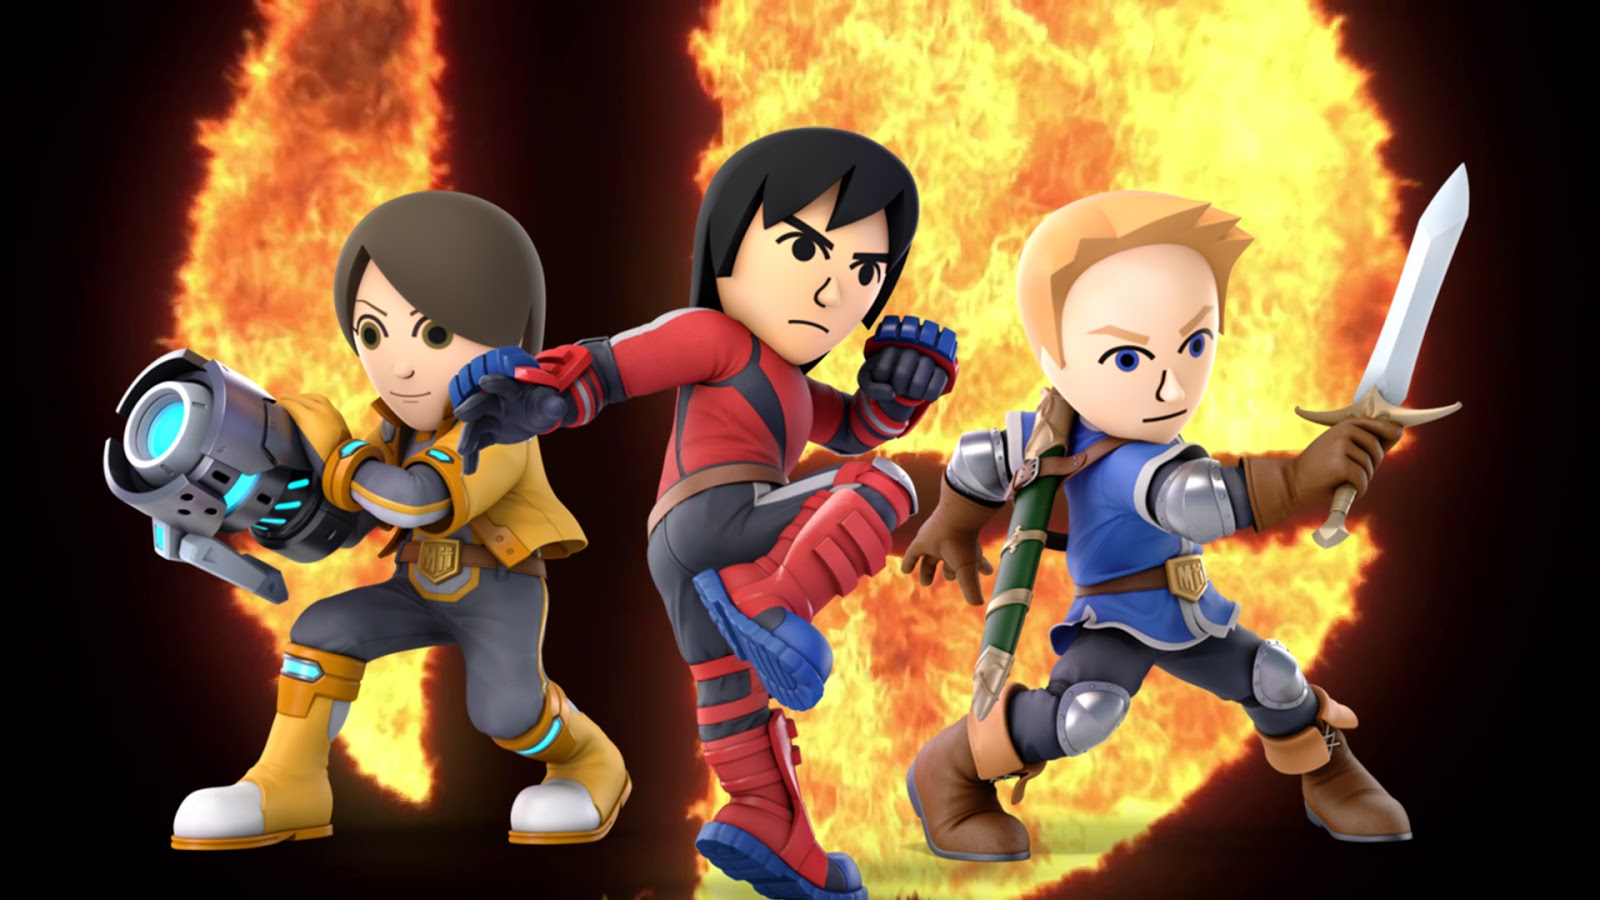 Super Smash Bros. Ultimate traz personagens famosos em lutas intensas